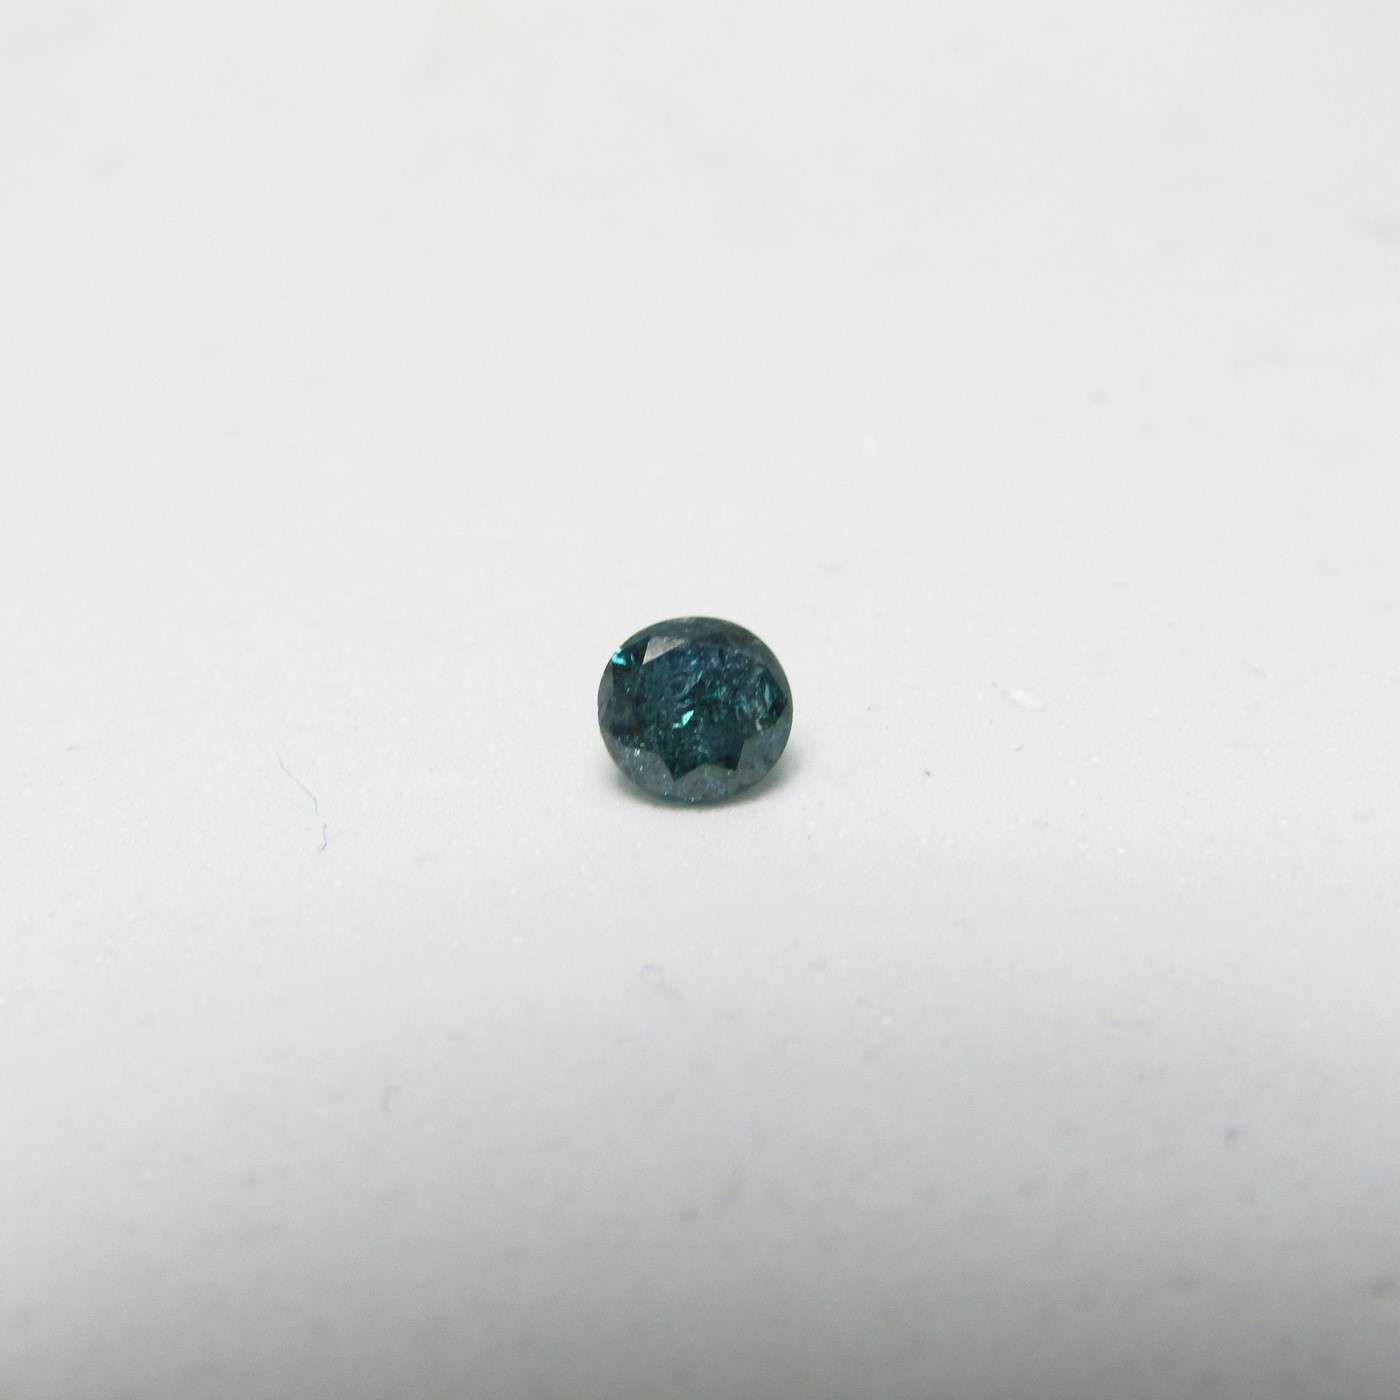 Diamante Natural de 0,46 ct. Talla: Brillante. Color: Intense Olive Green. Pureza: P3. Mejorado. Certificado IGR.